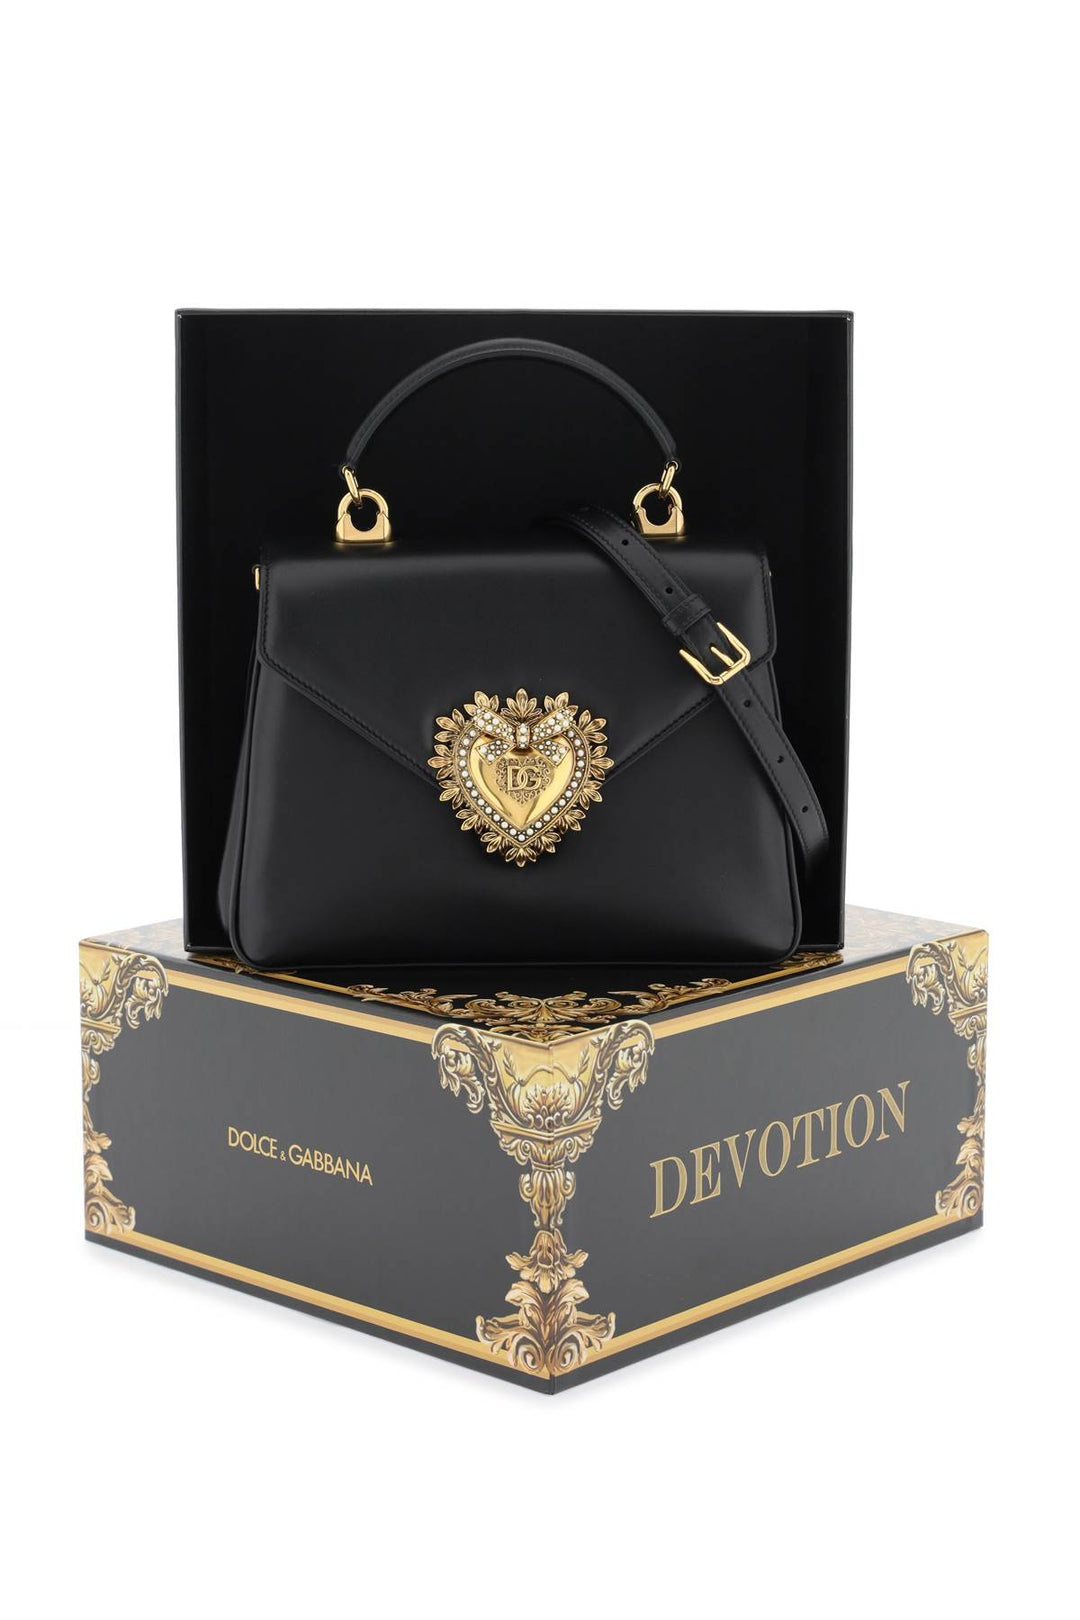 Borsa A Mano Devotion - Dolce & Gabbana - Donna